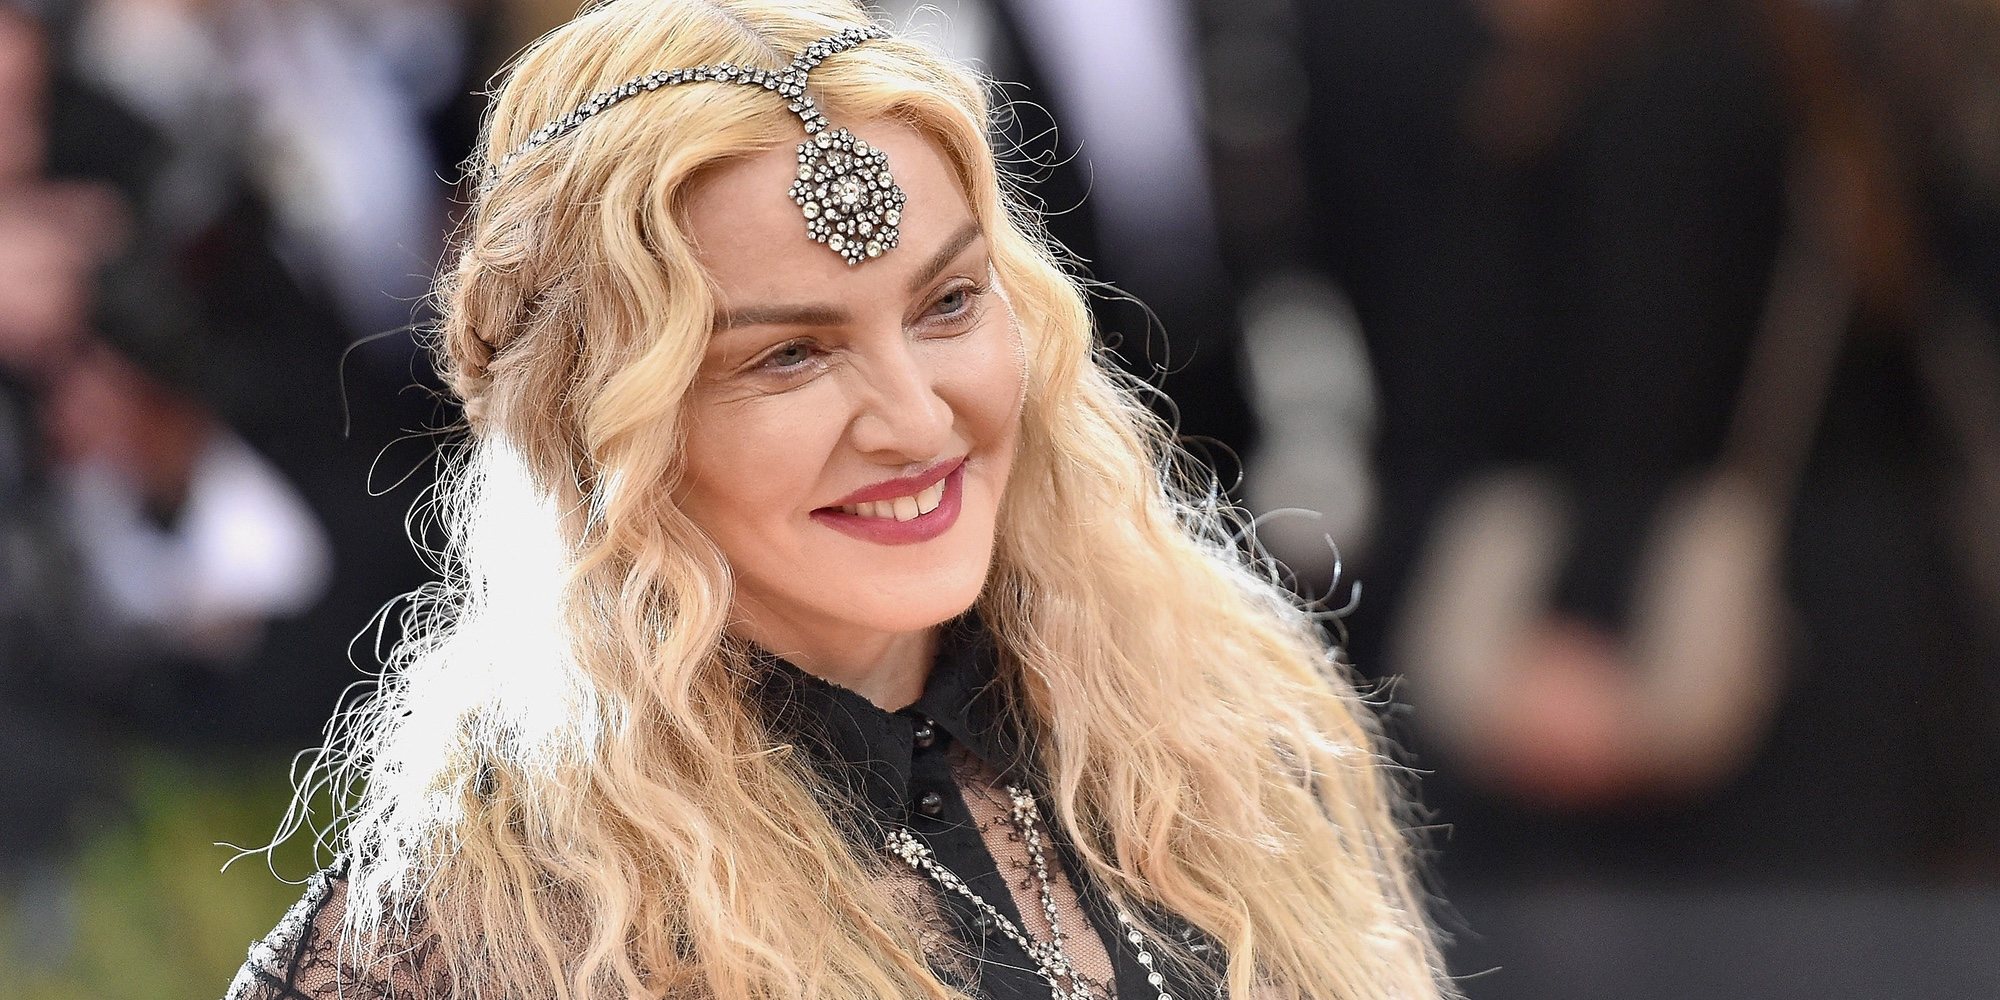 La mejor celebración de Acción de Gracias 2018 para Madonna: en Malawi con sus 6 hijos